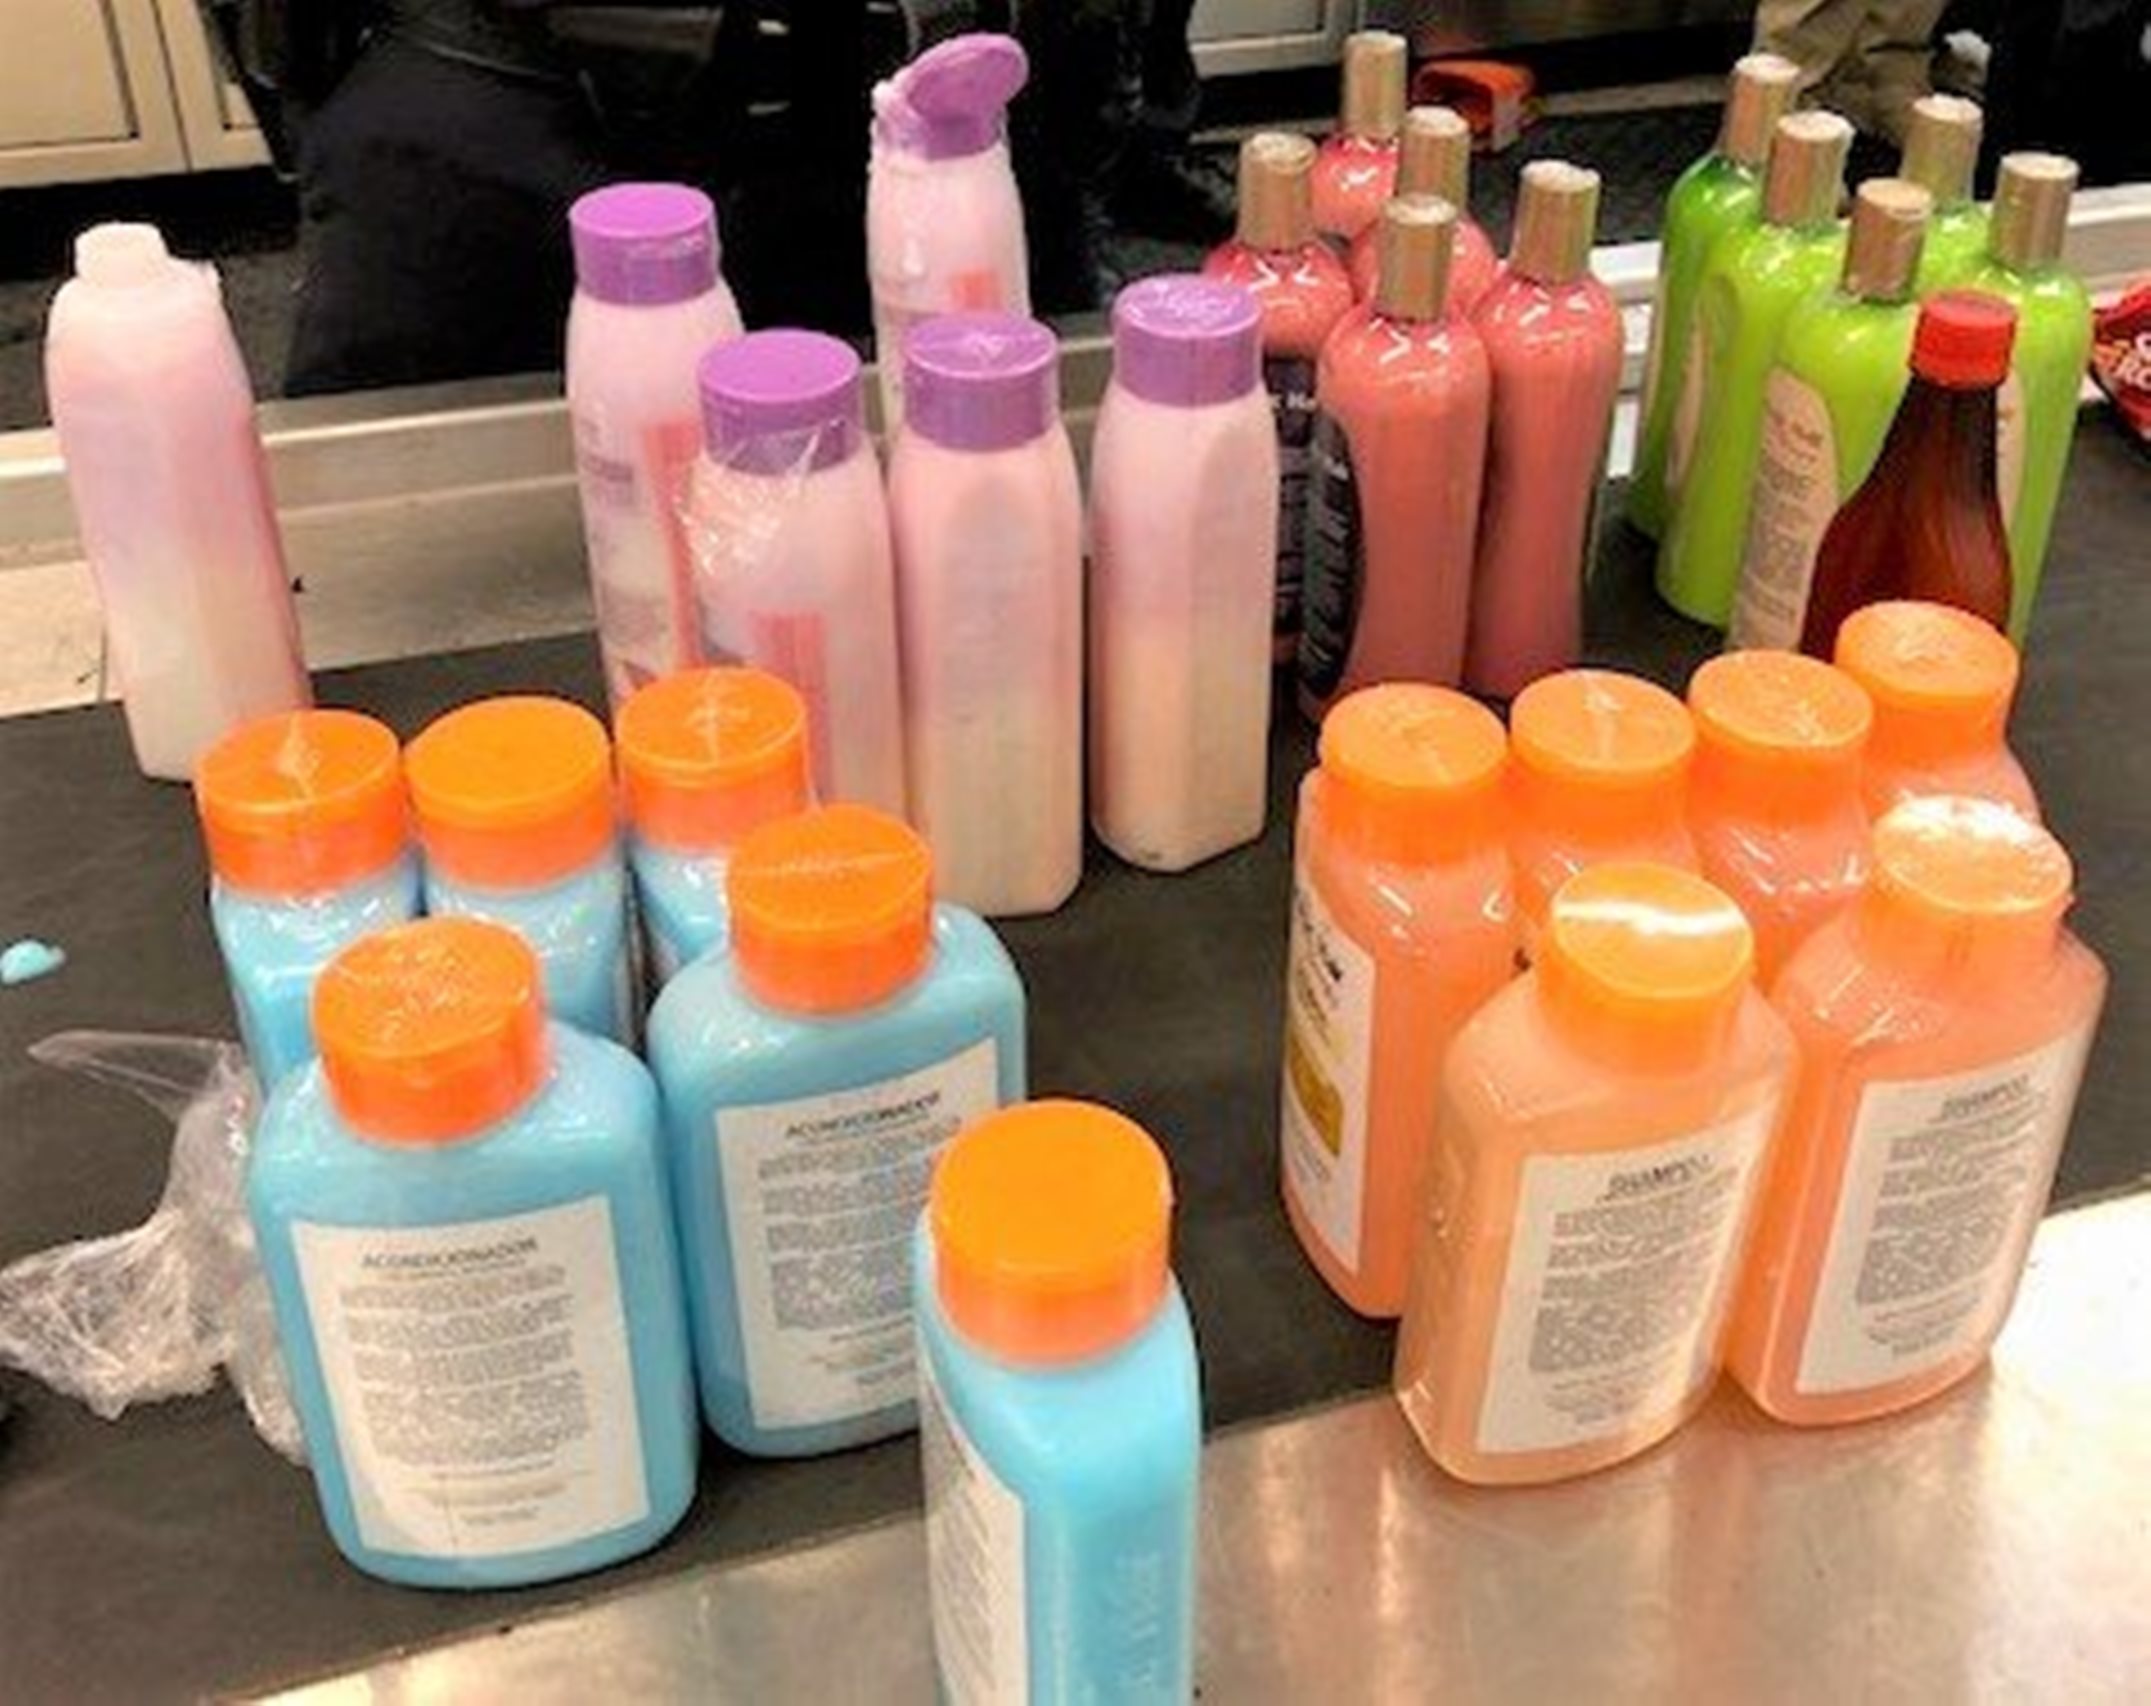 Texas: Flug-Passagier schmuggelt Koks in 24 Shampoo-Flaschen